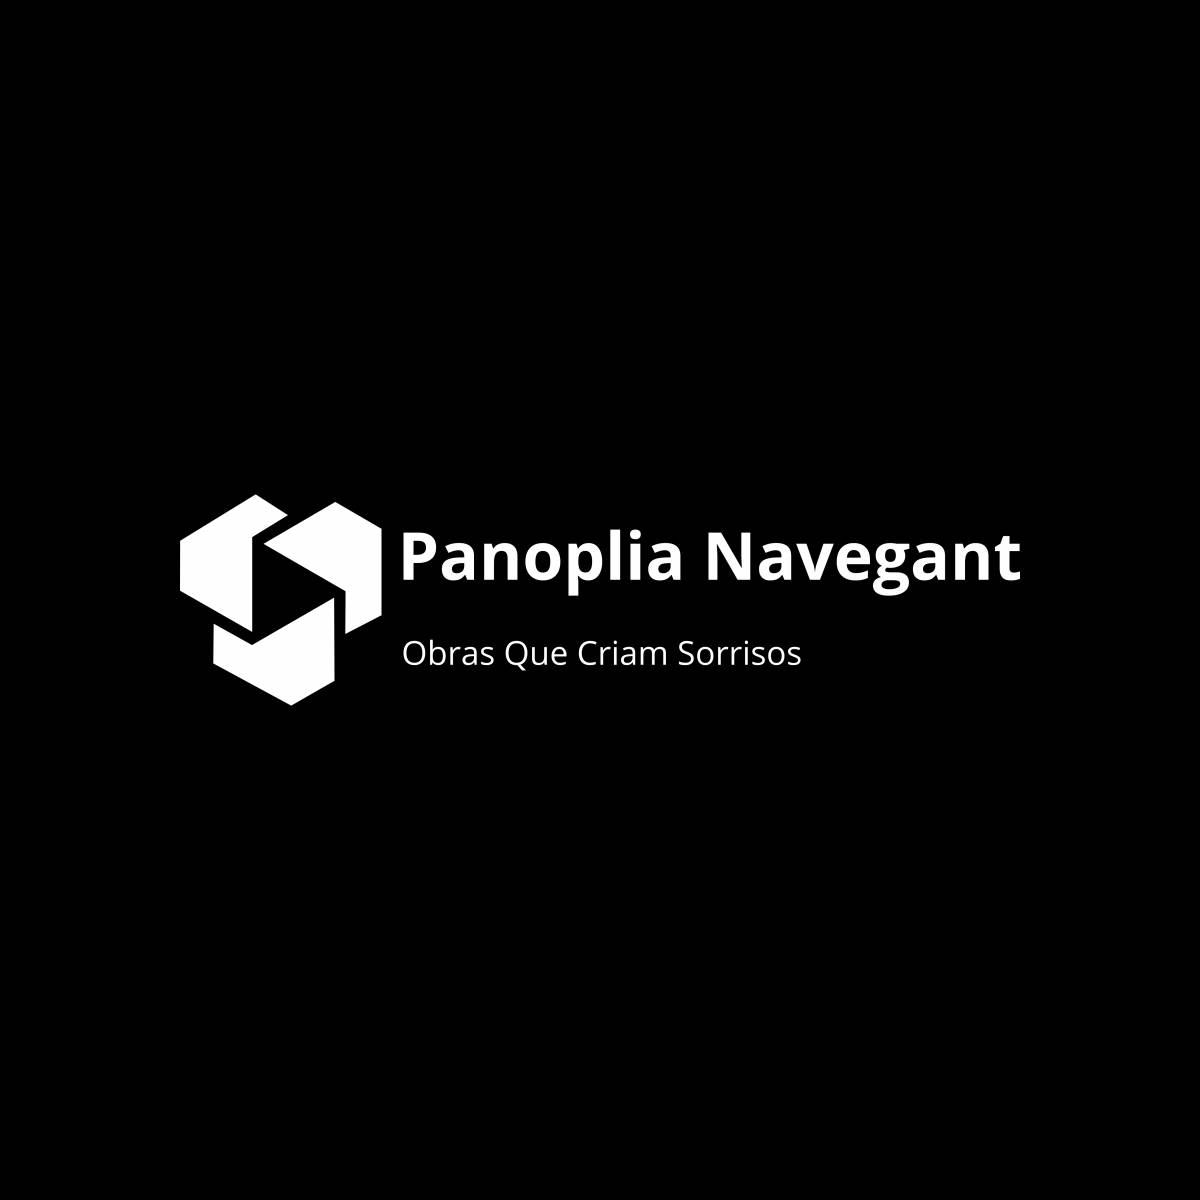 Panoplia Navegante - Loures - Supervisão de Obras